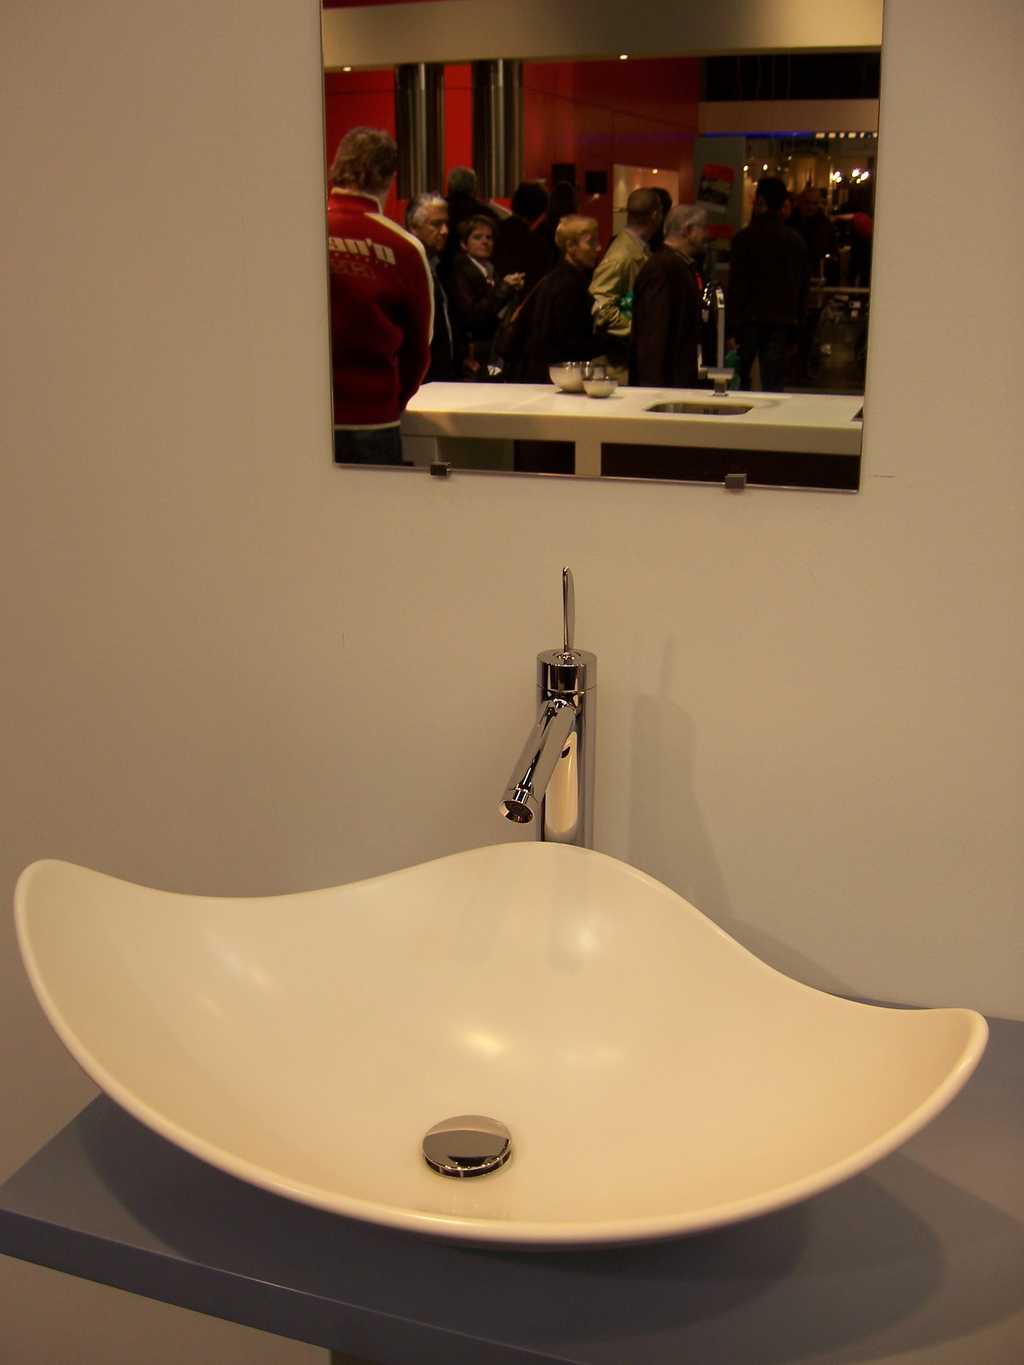 Un lavabo est une vasque qui sert généralement à se laver les mains. © Fazh, CC BY-NC-SA 2.0, Flickr